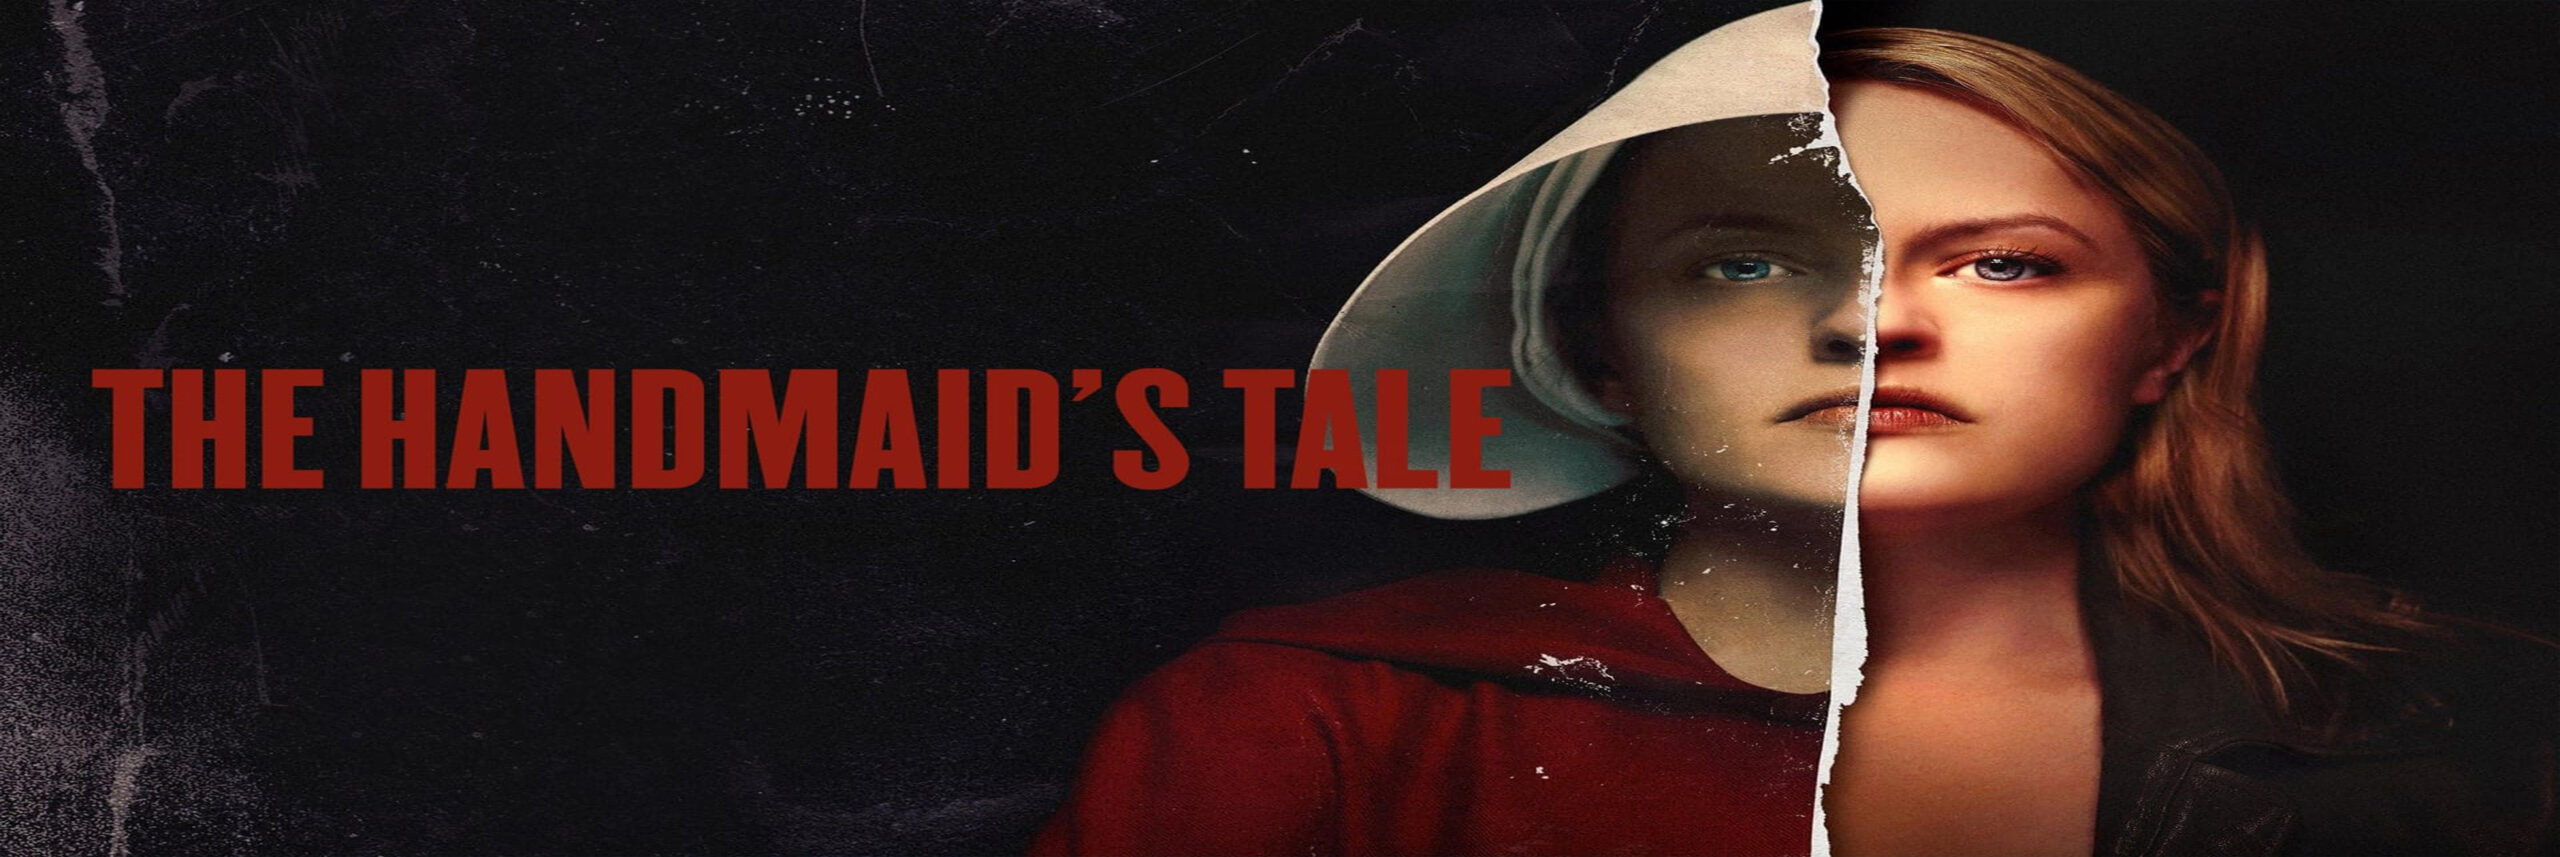 سرگذشت ندیمه – The Handmaid’s Tale